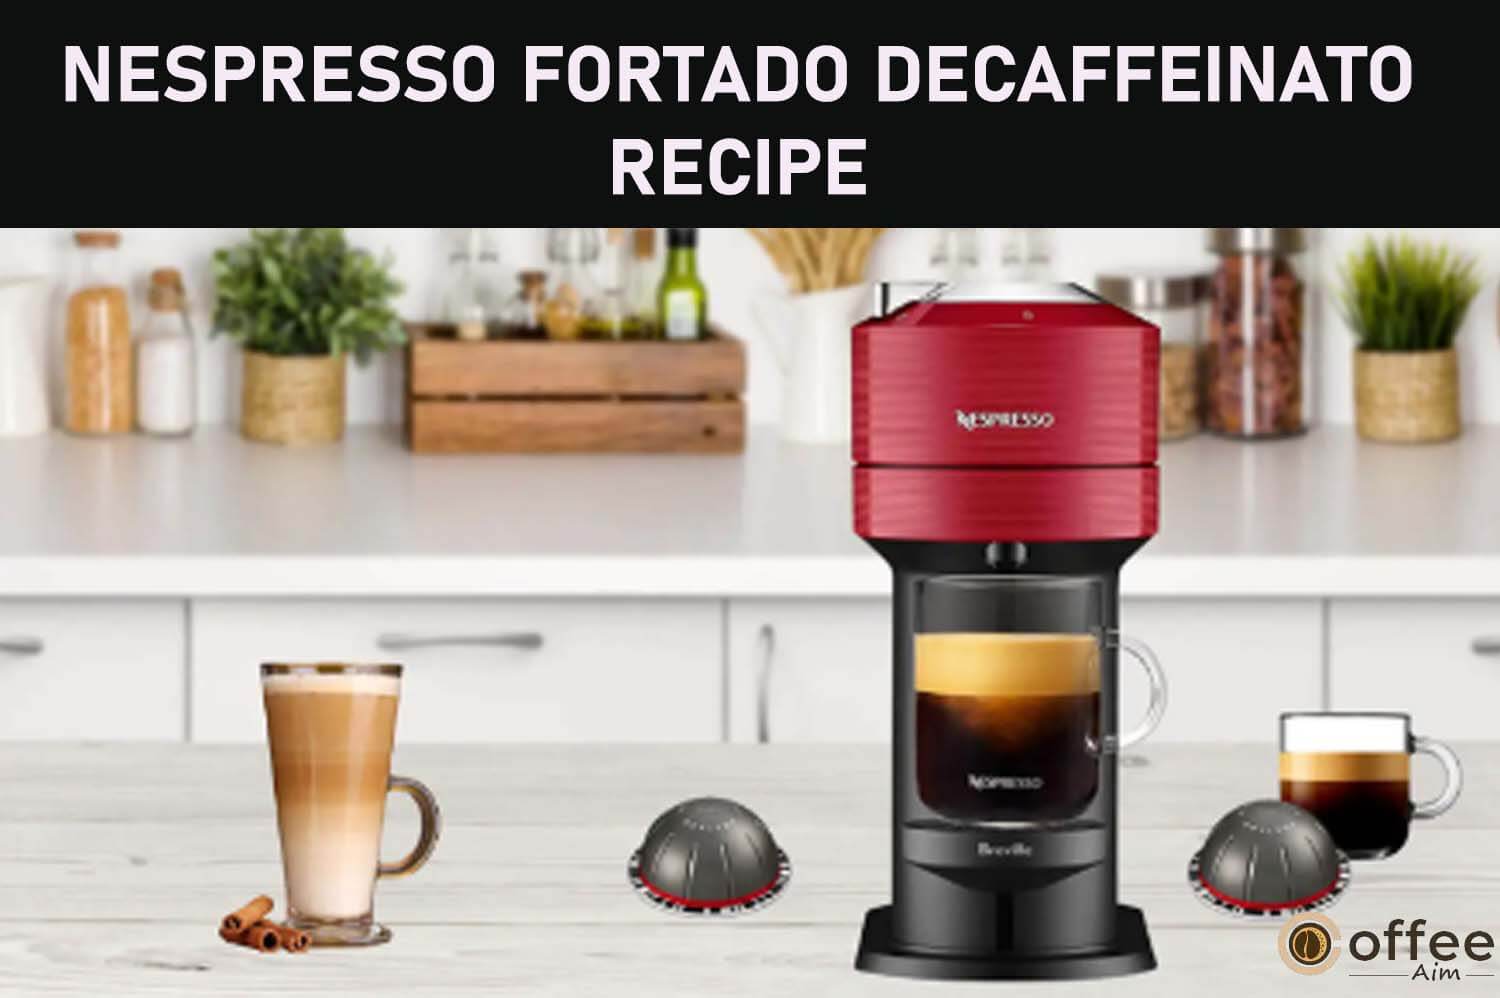 Featured image for the article "Nespresso-Fortado-Decaffeinato-Recipe"